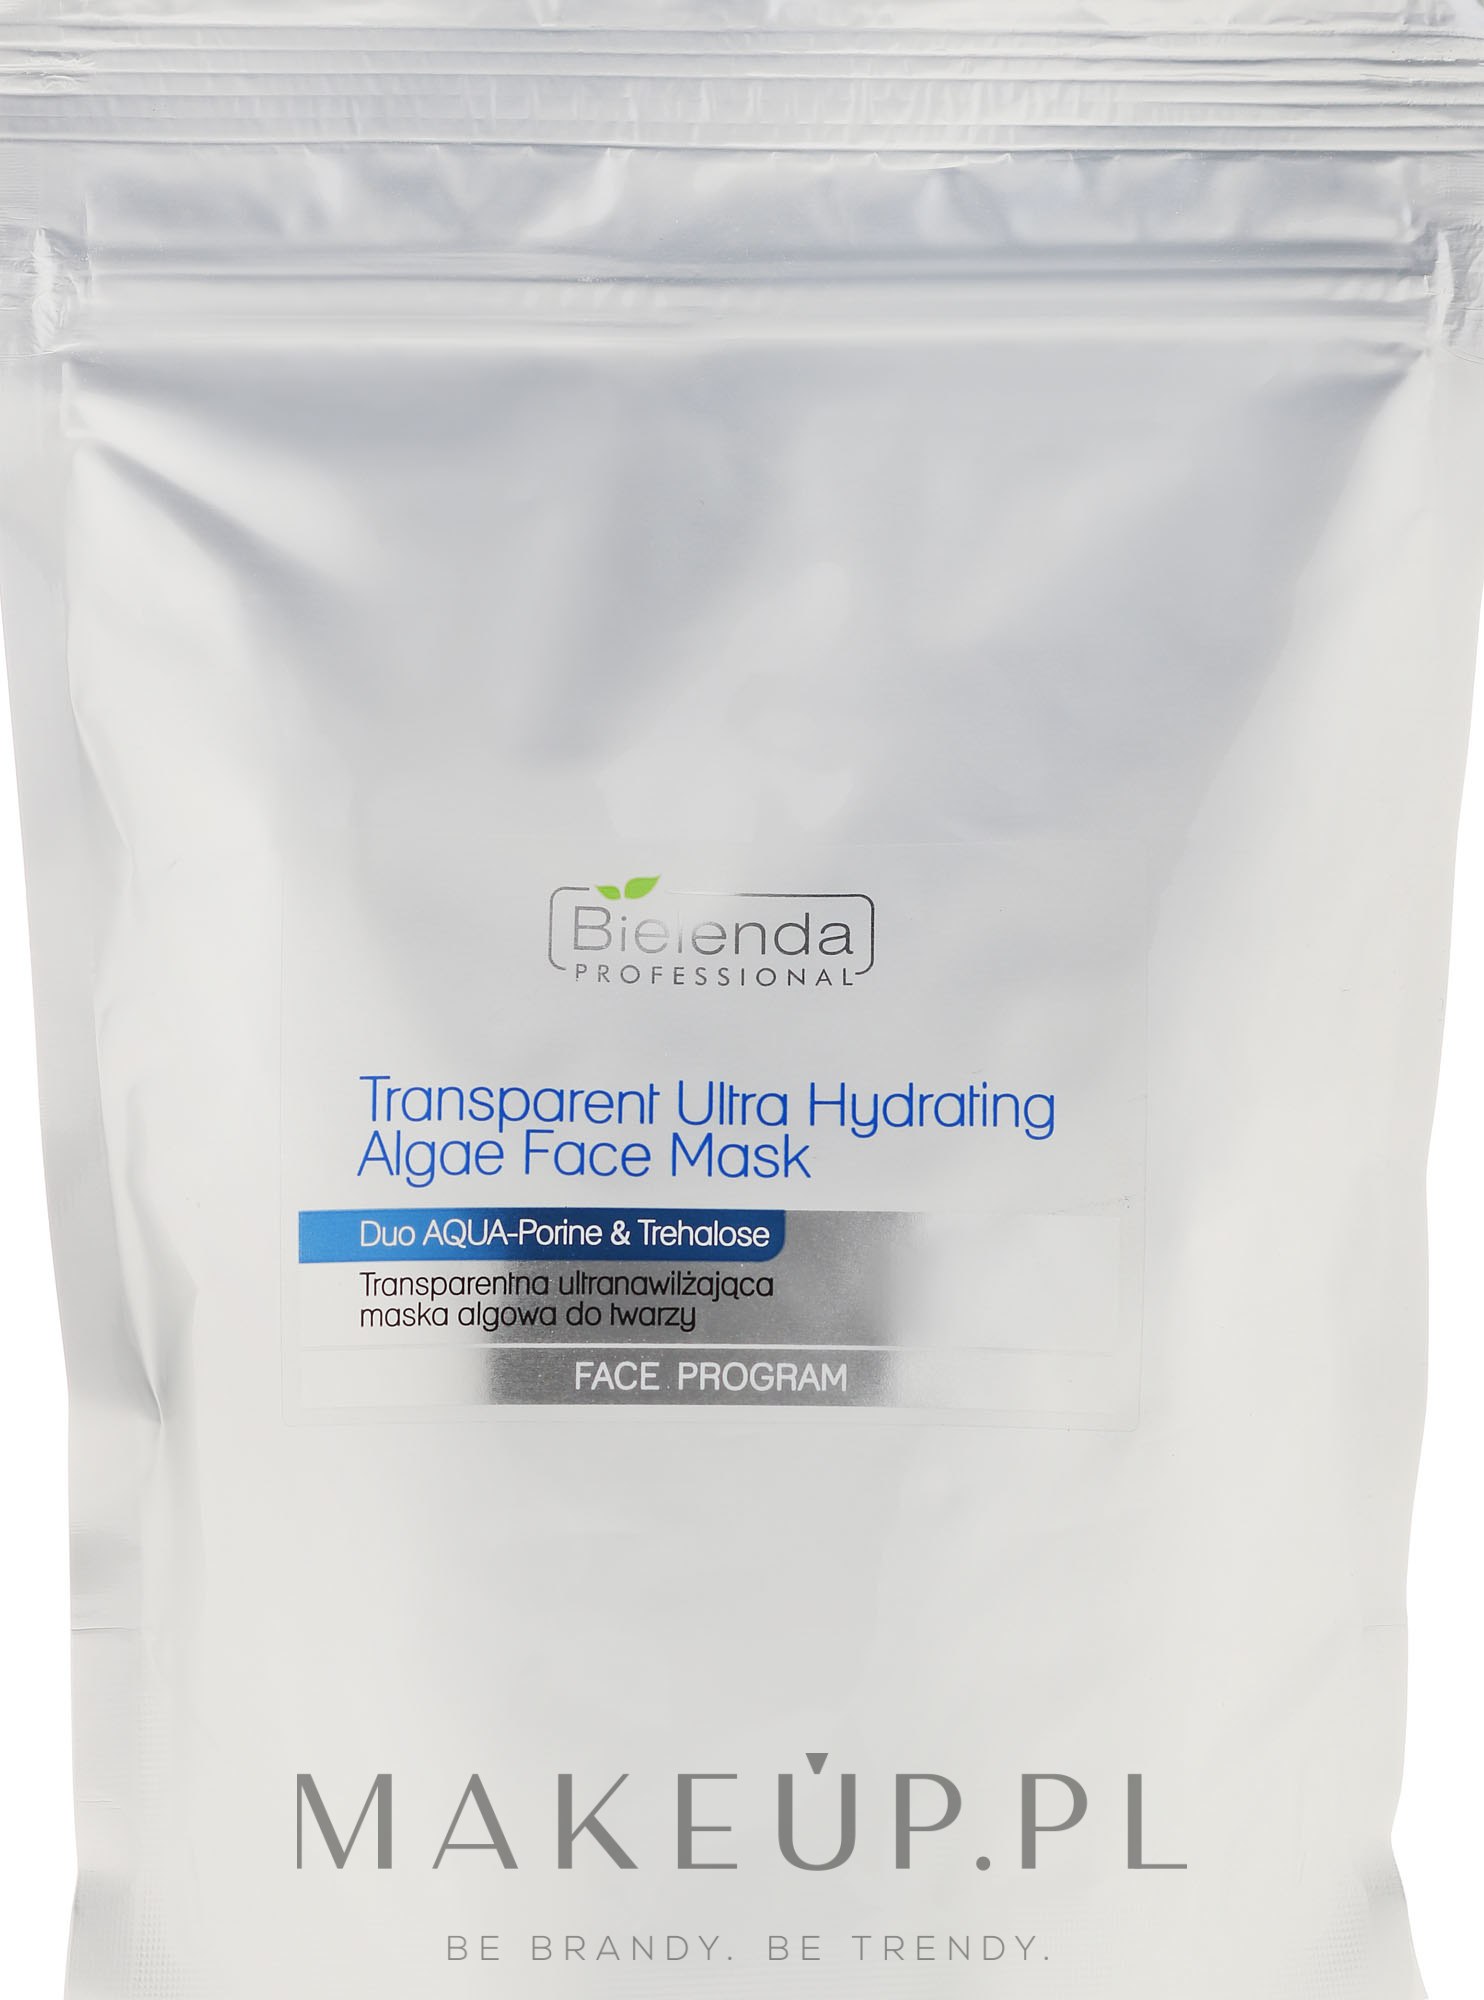 Transparentna ultranawilżająca maska algowa do twarzy - Bielenda Professional Face Program Transparent Ultra Hydrating Algae Face Mask (uzupełnienie) — Zdjęcie 190 g